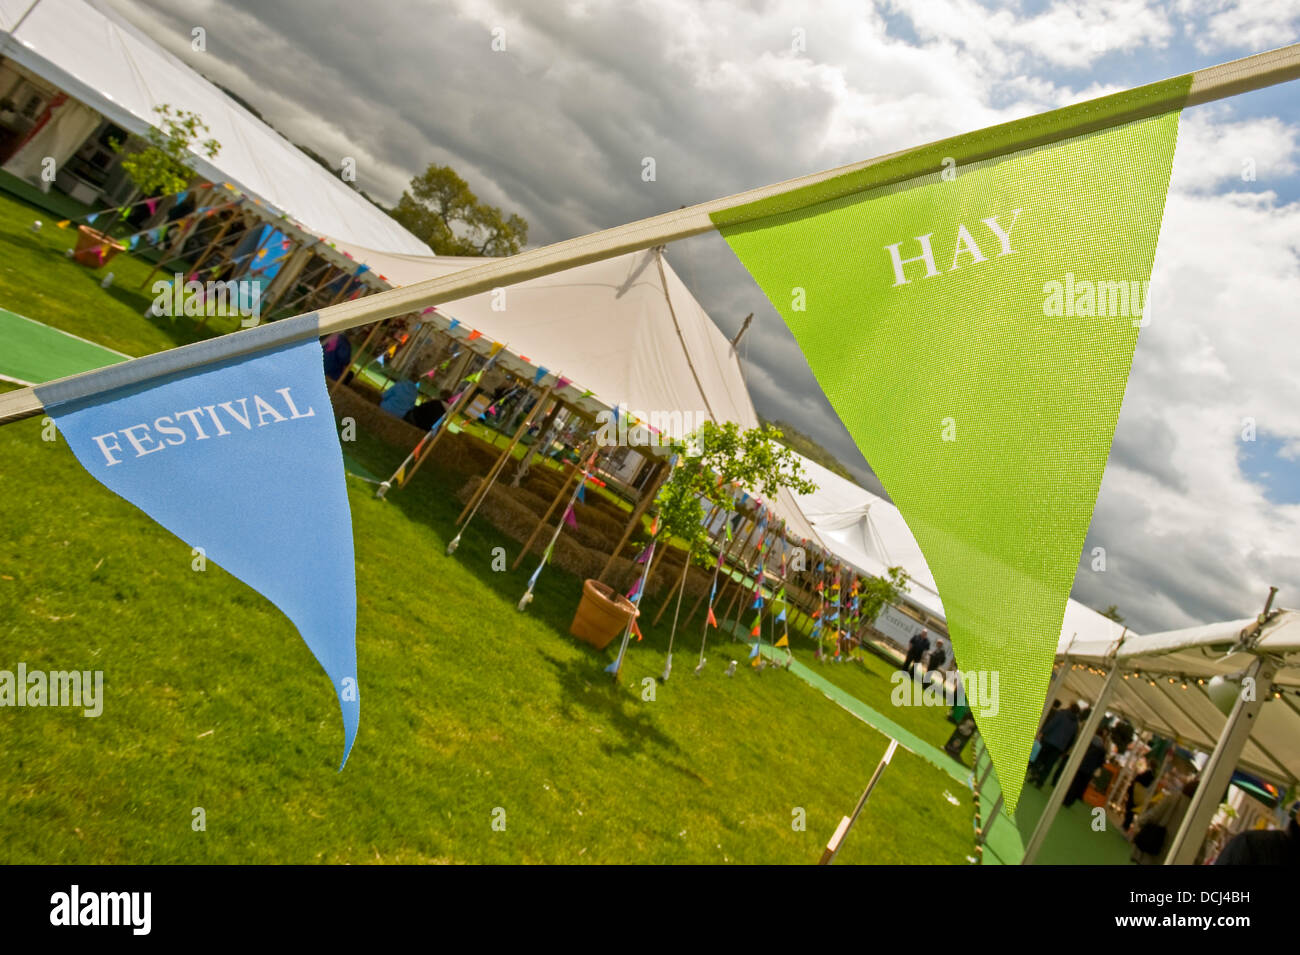 Hay festival 'banners' en el festival del heno con una zona de estar exterior en el fondo. Foto de stock